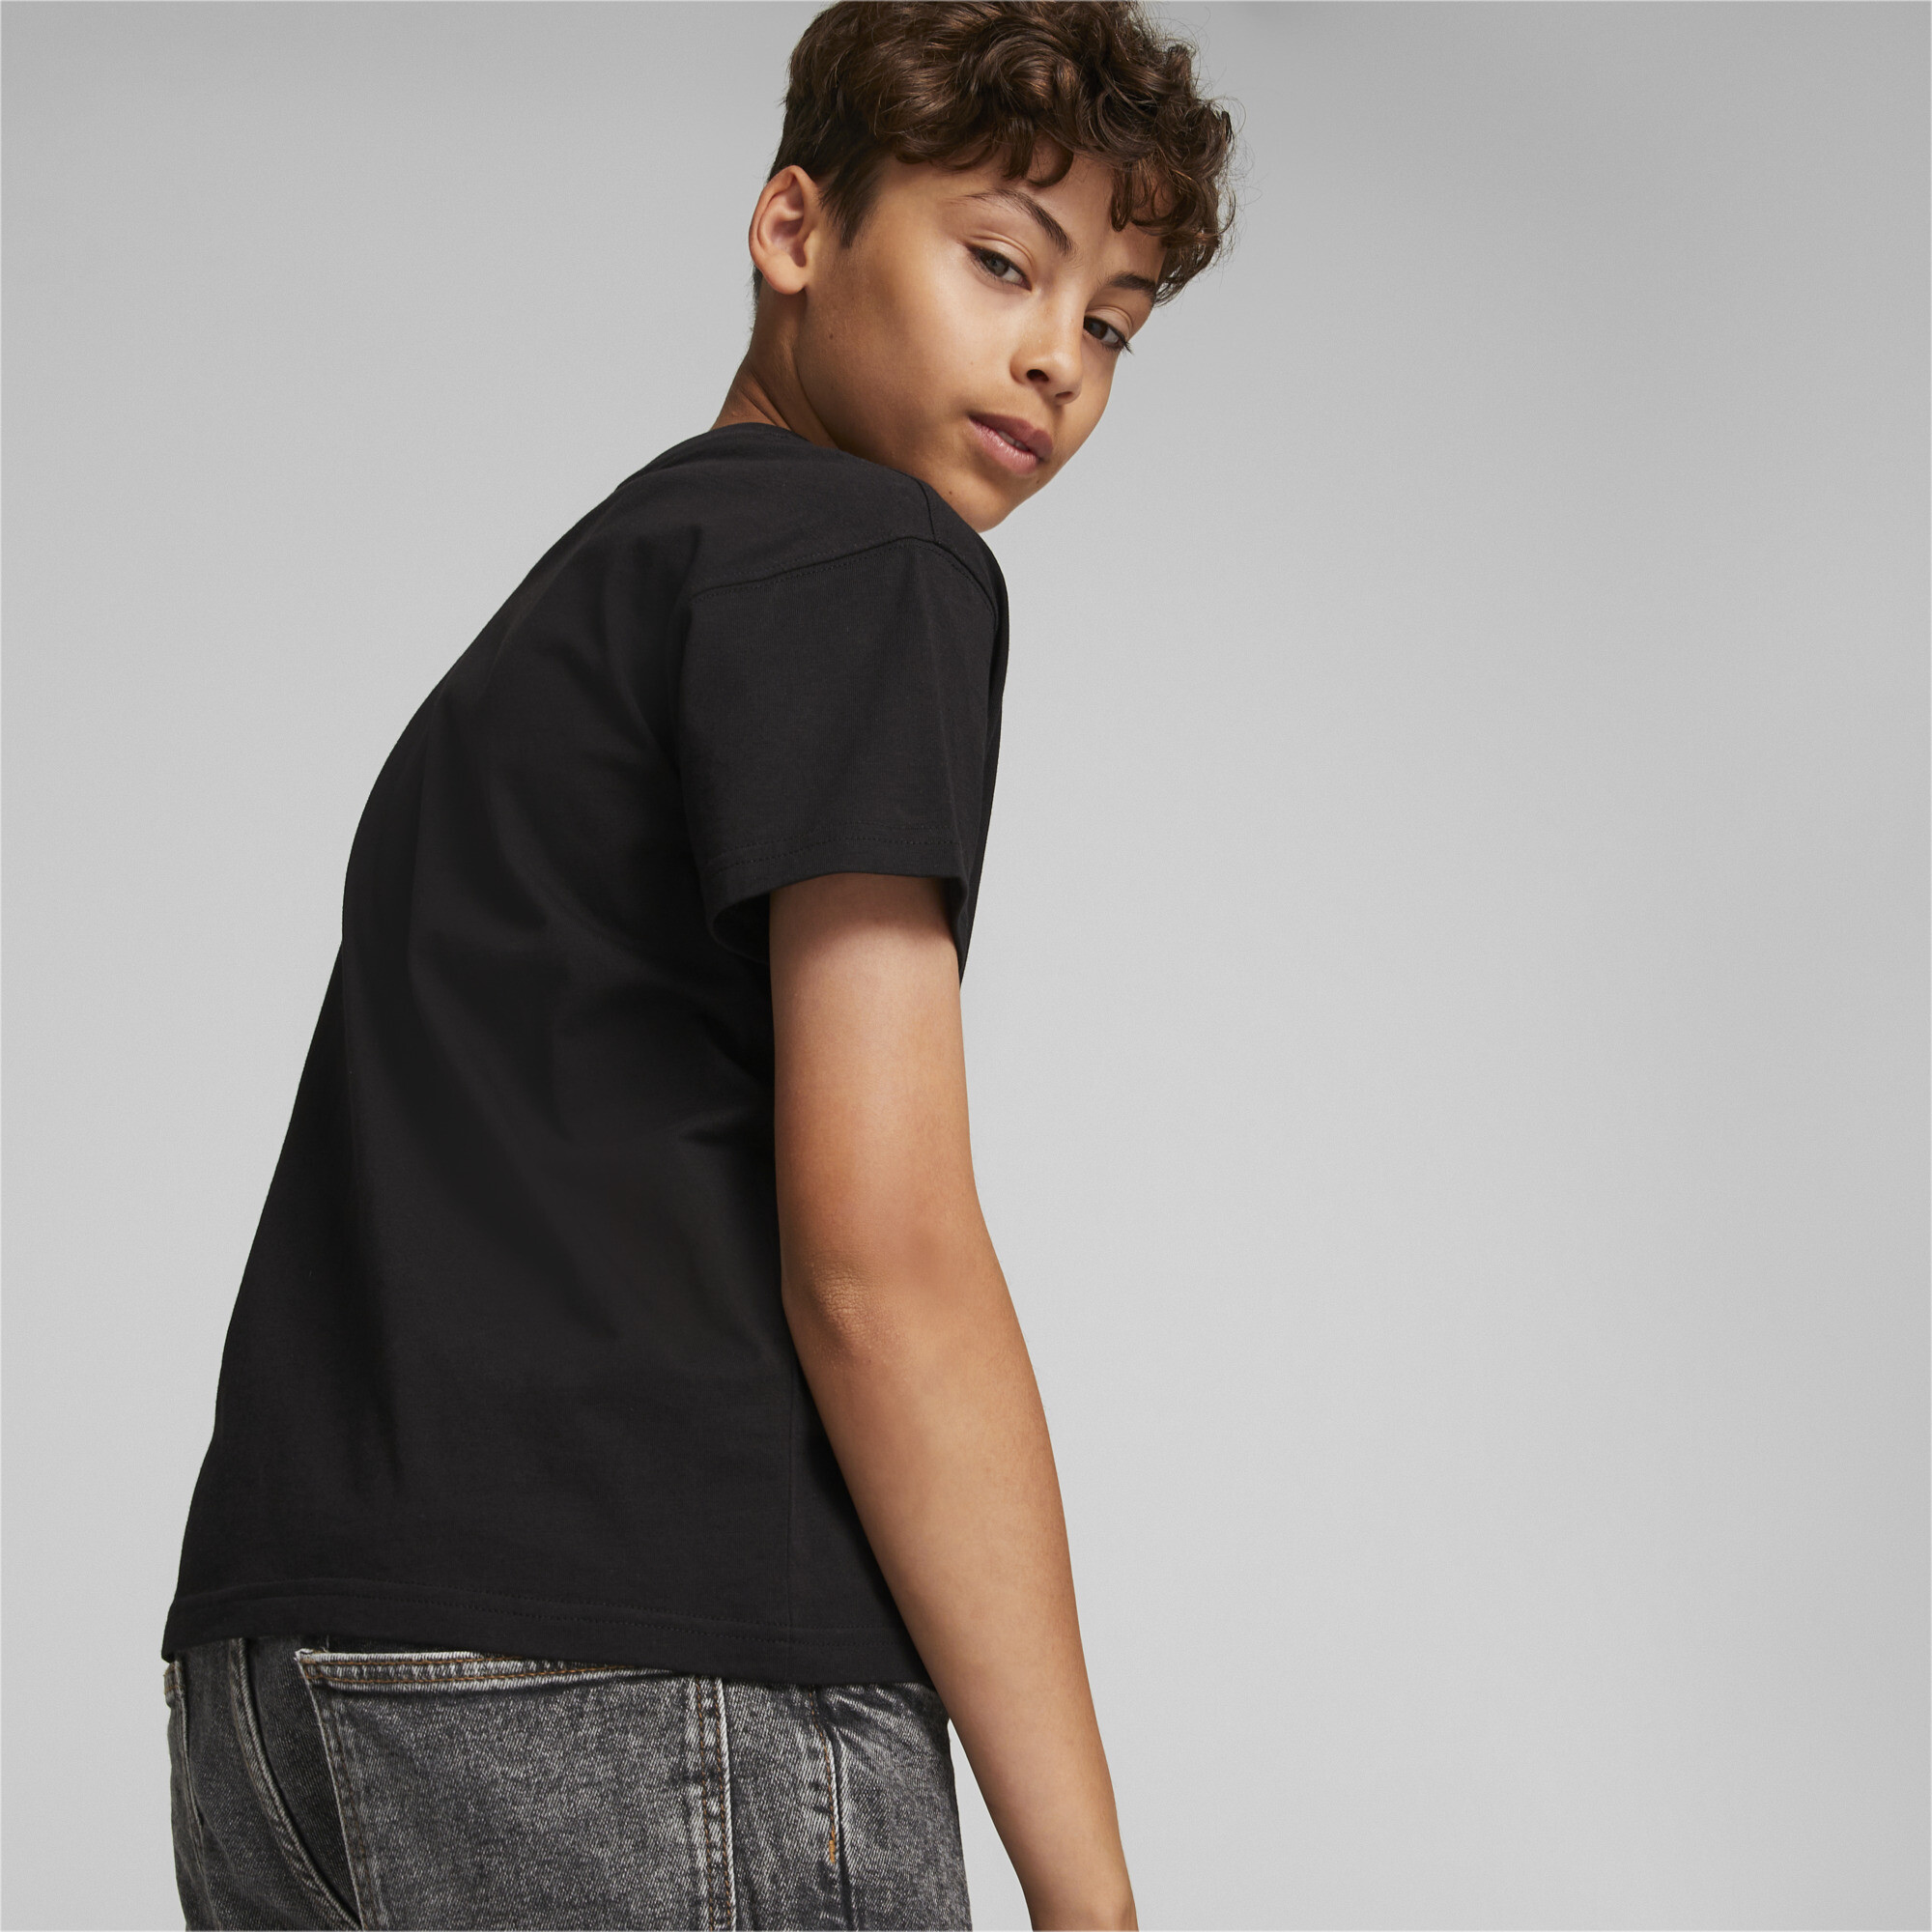 PUMA Fandom T-Shirt In Black, Size 13-14 Youth